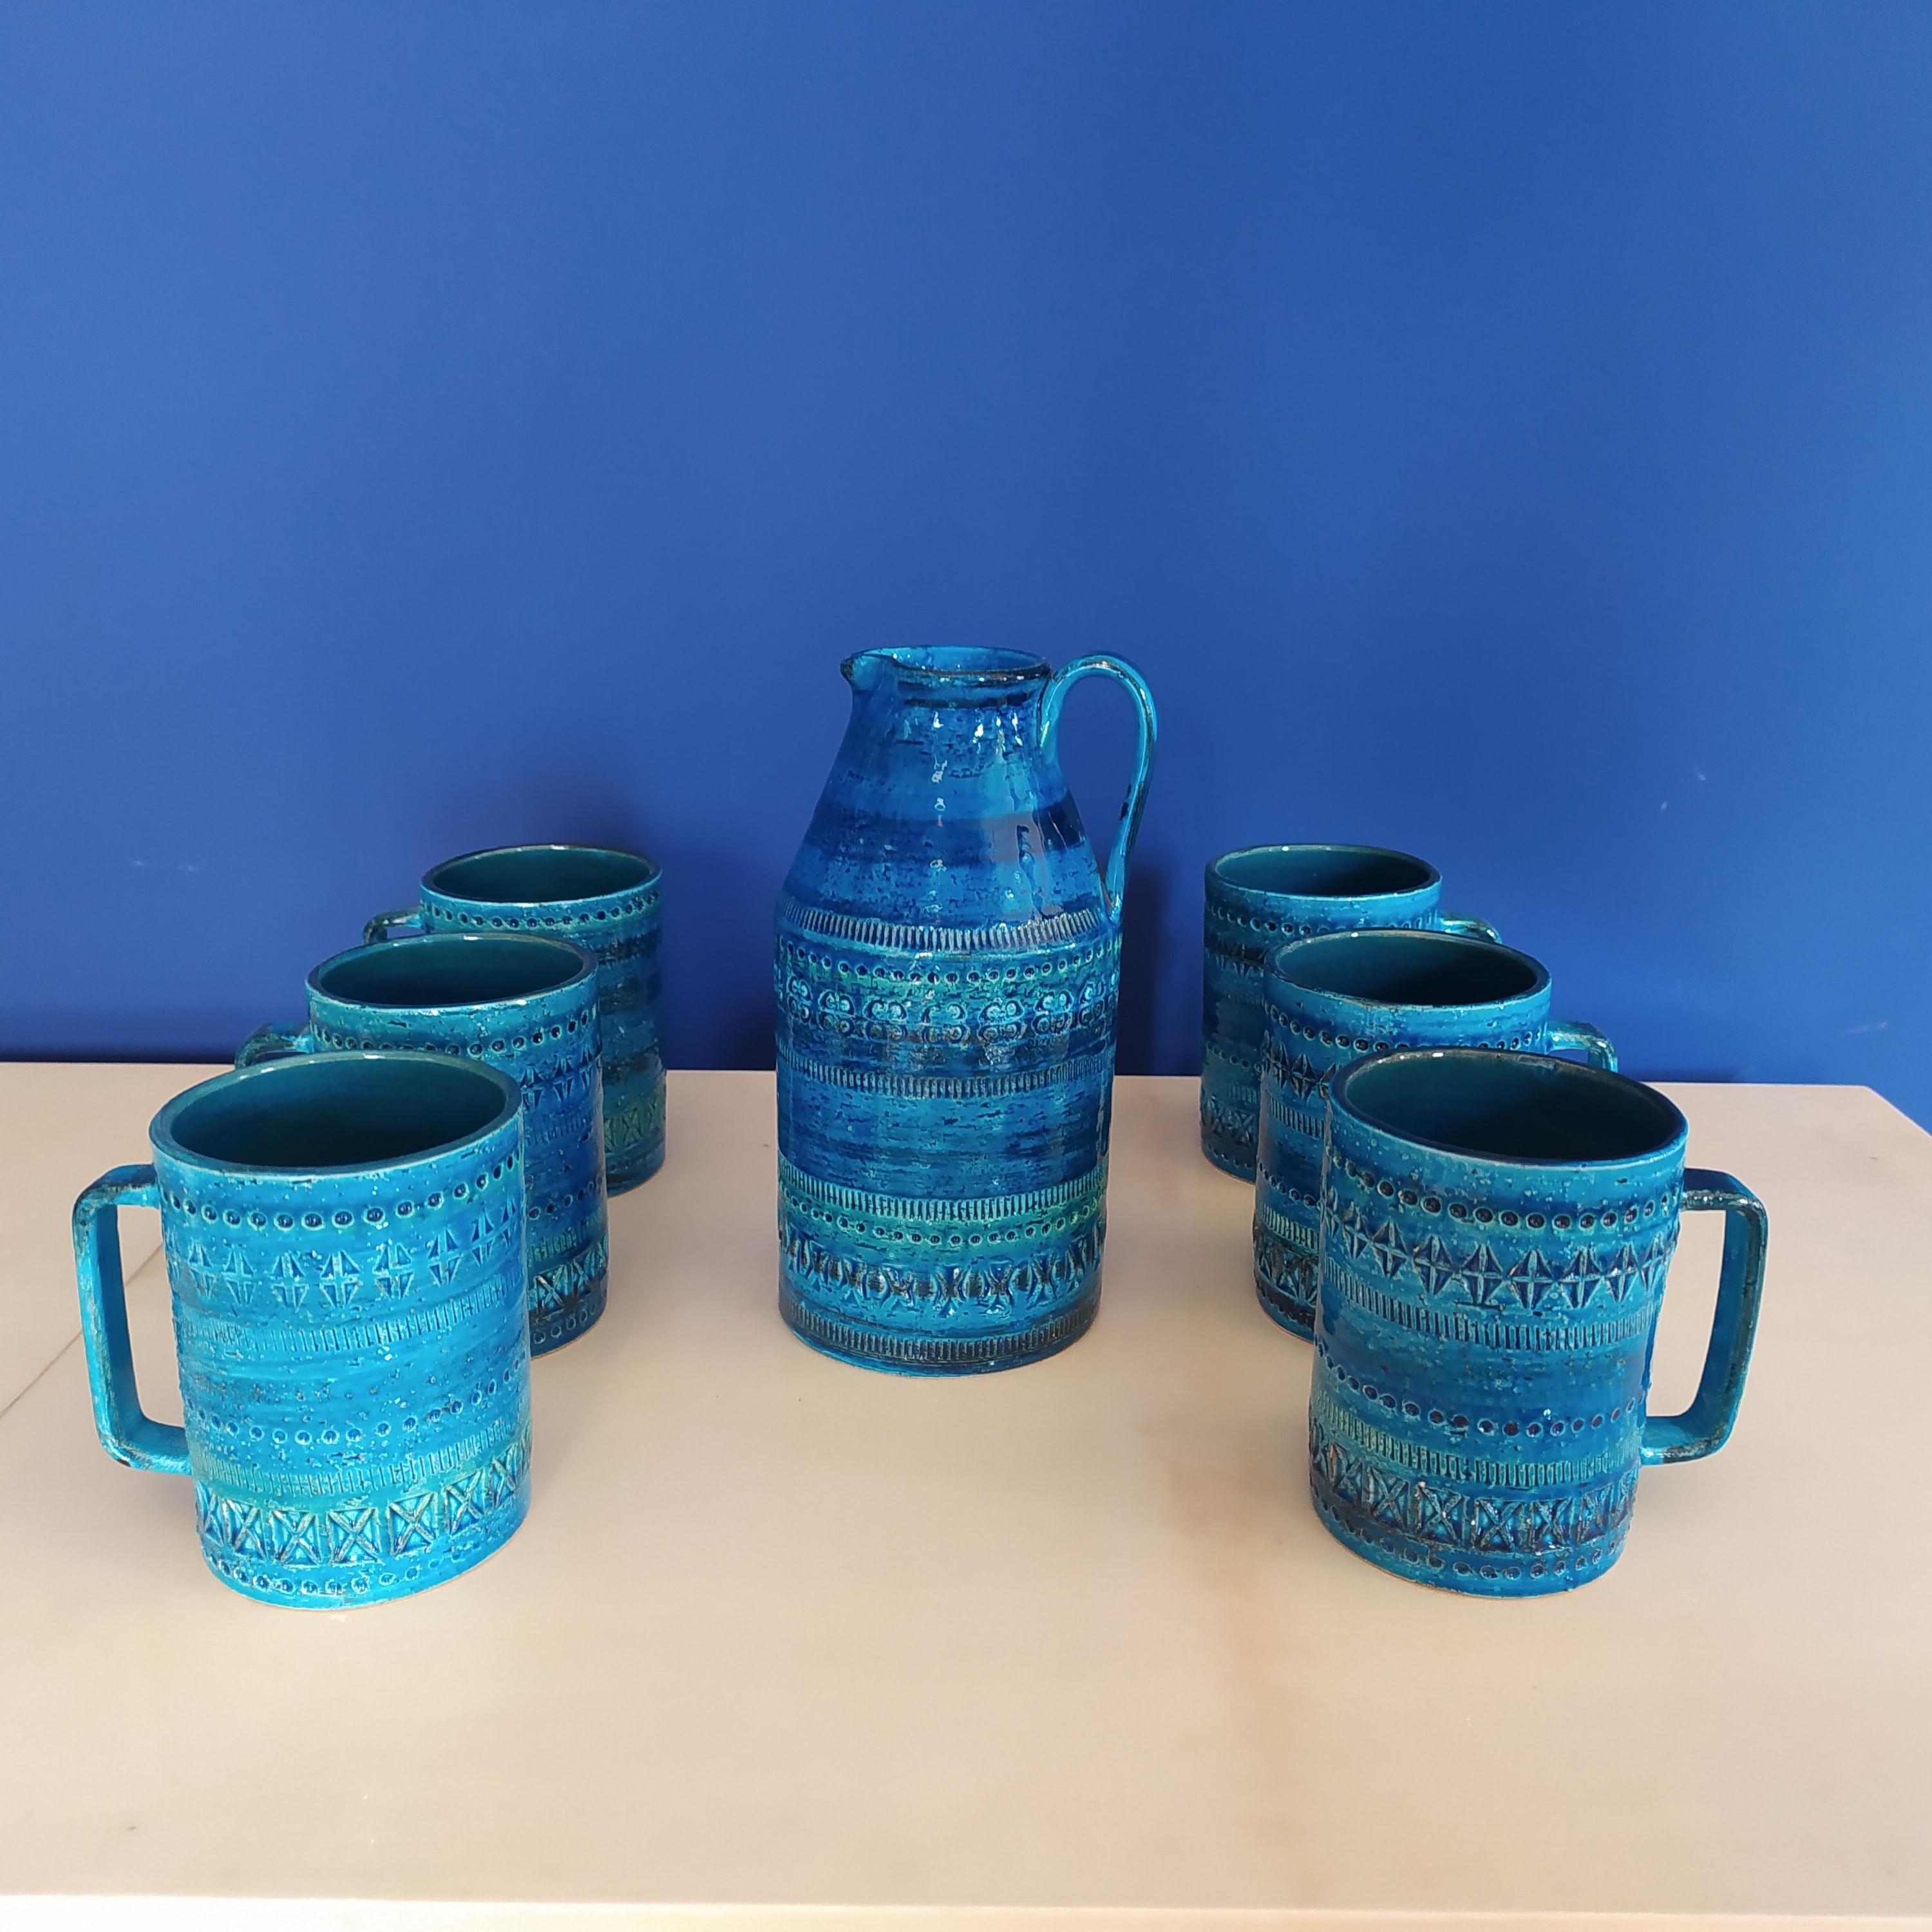 Ensemble des années 1960 composé d'une cruche et de six tasses d'Aldo Londi pour Bitossi (Blue Collectional) en céramique. Fabriqué en Italie
Les articles sont en excellent état.